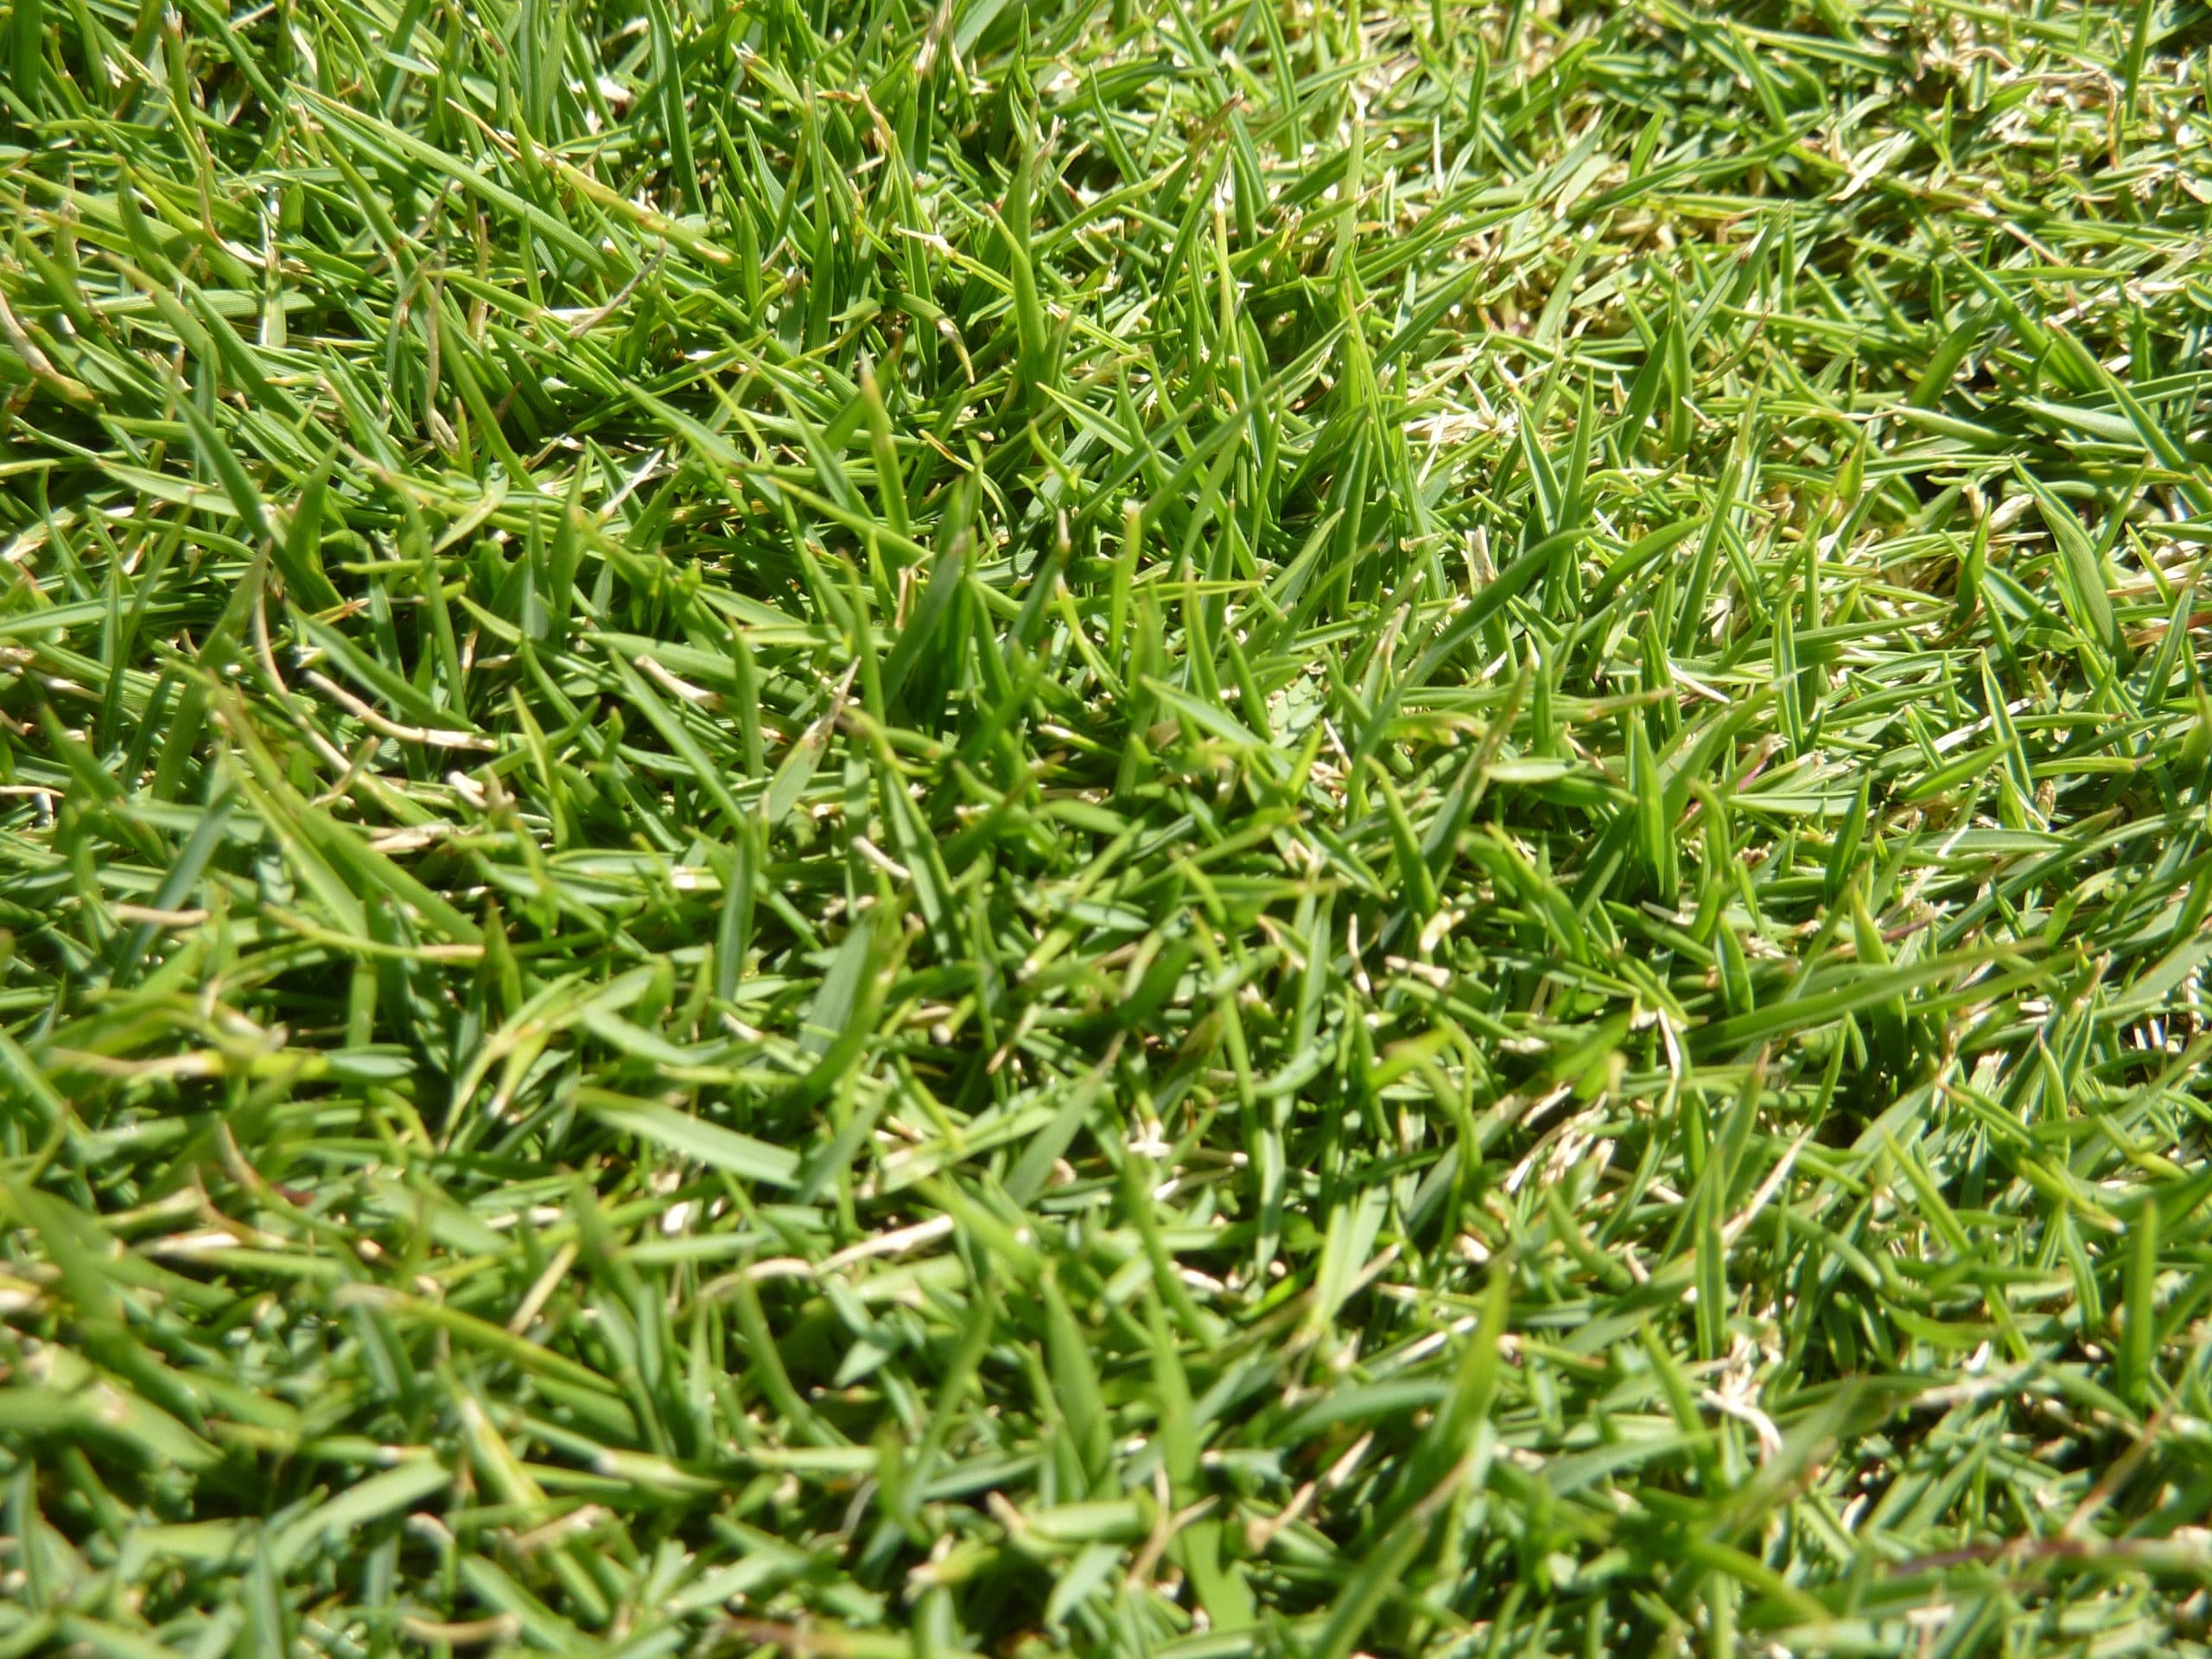 Zoysia Grass Plugs